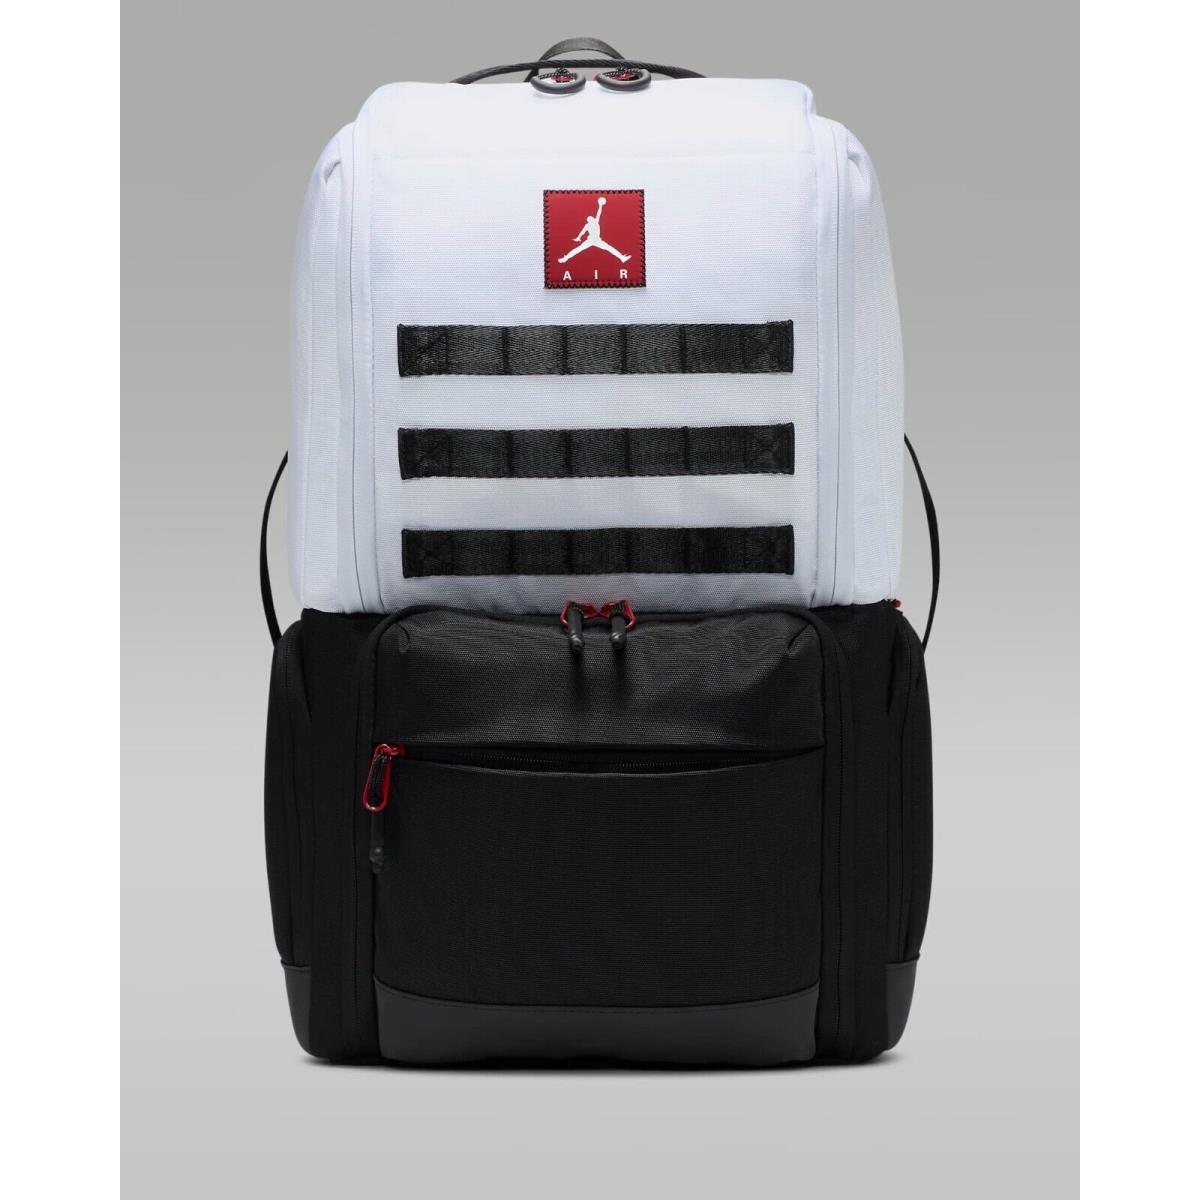 Nike Air Jordan Collectors Backpack Travel Sneaker Shoe Bag Pack 9B0558-F00